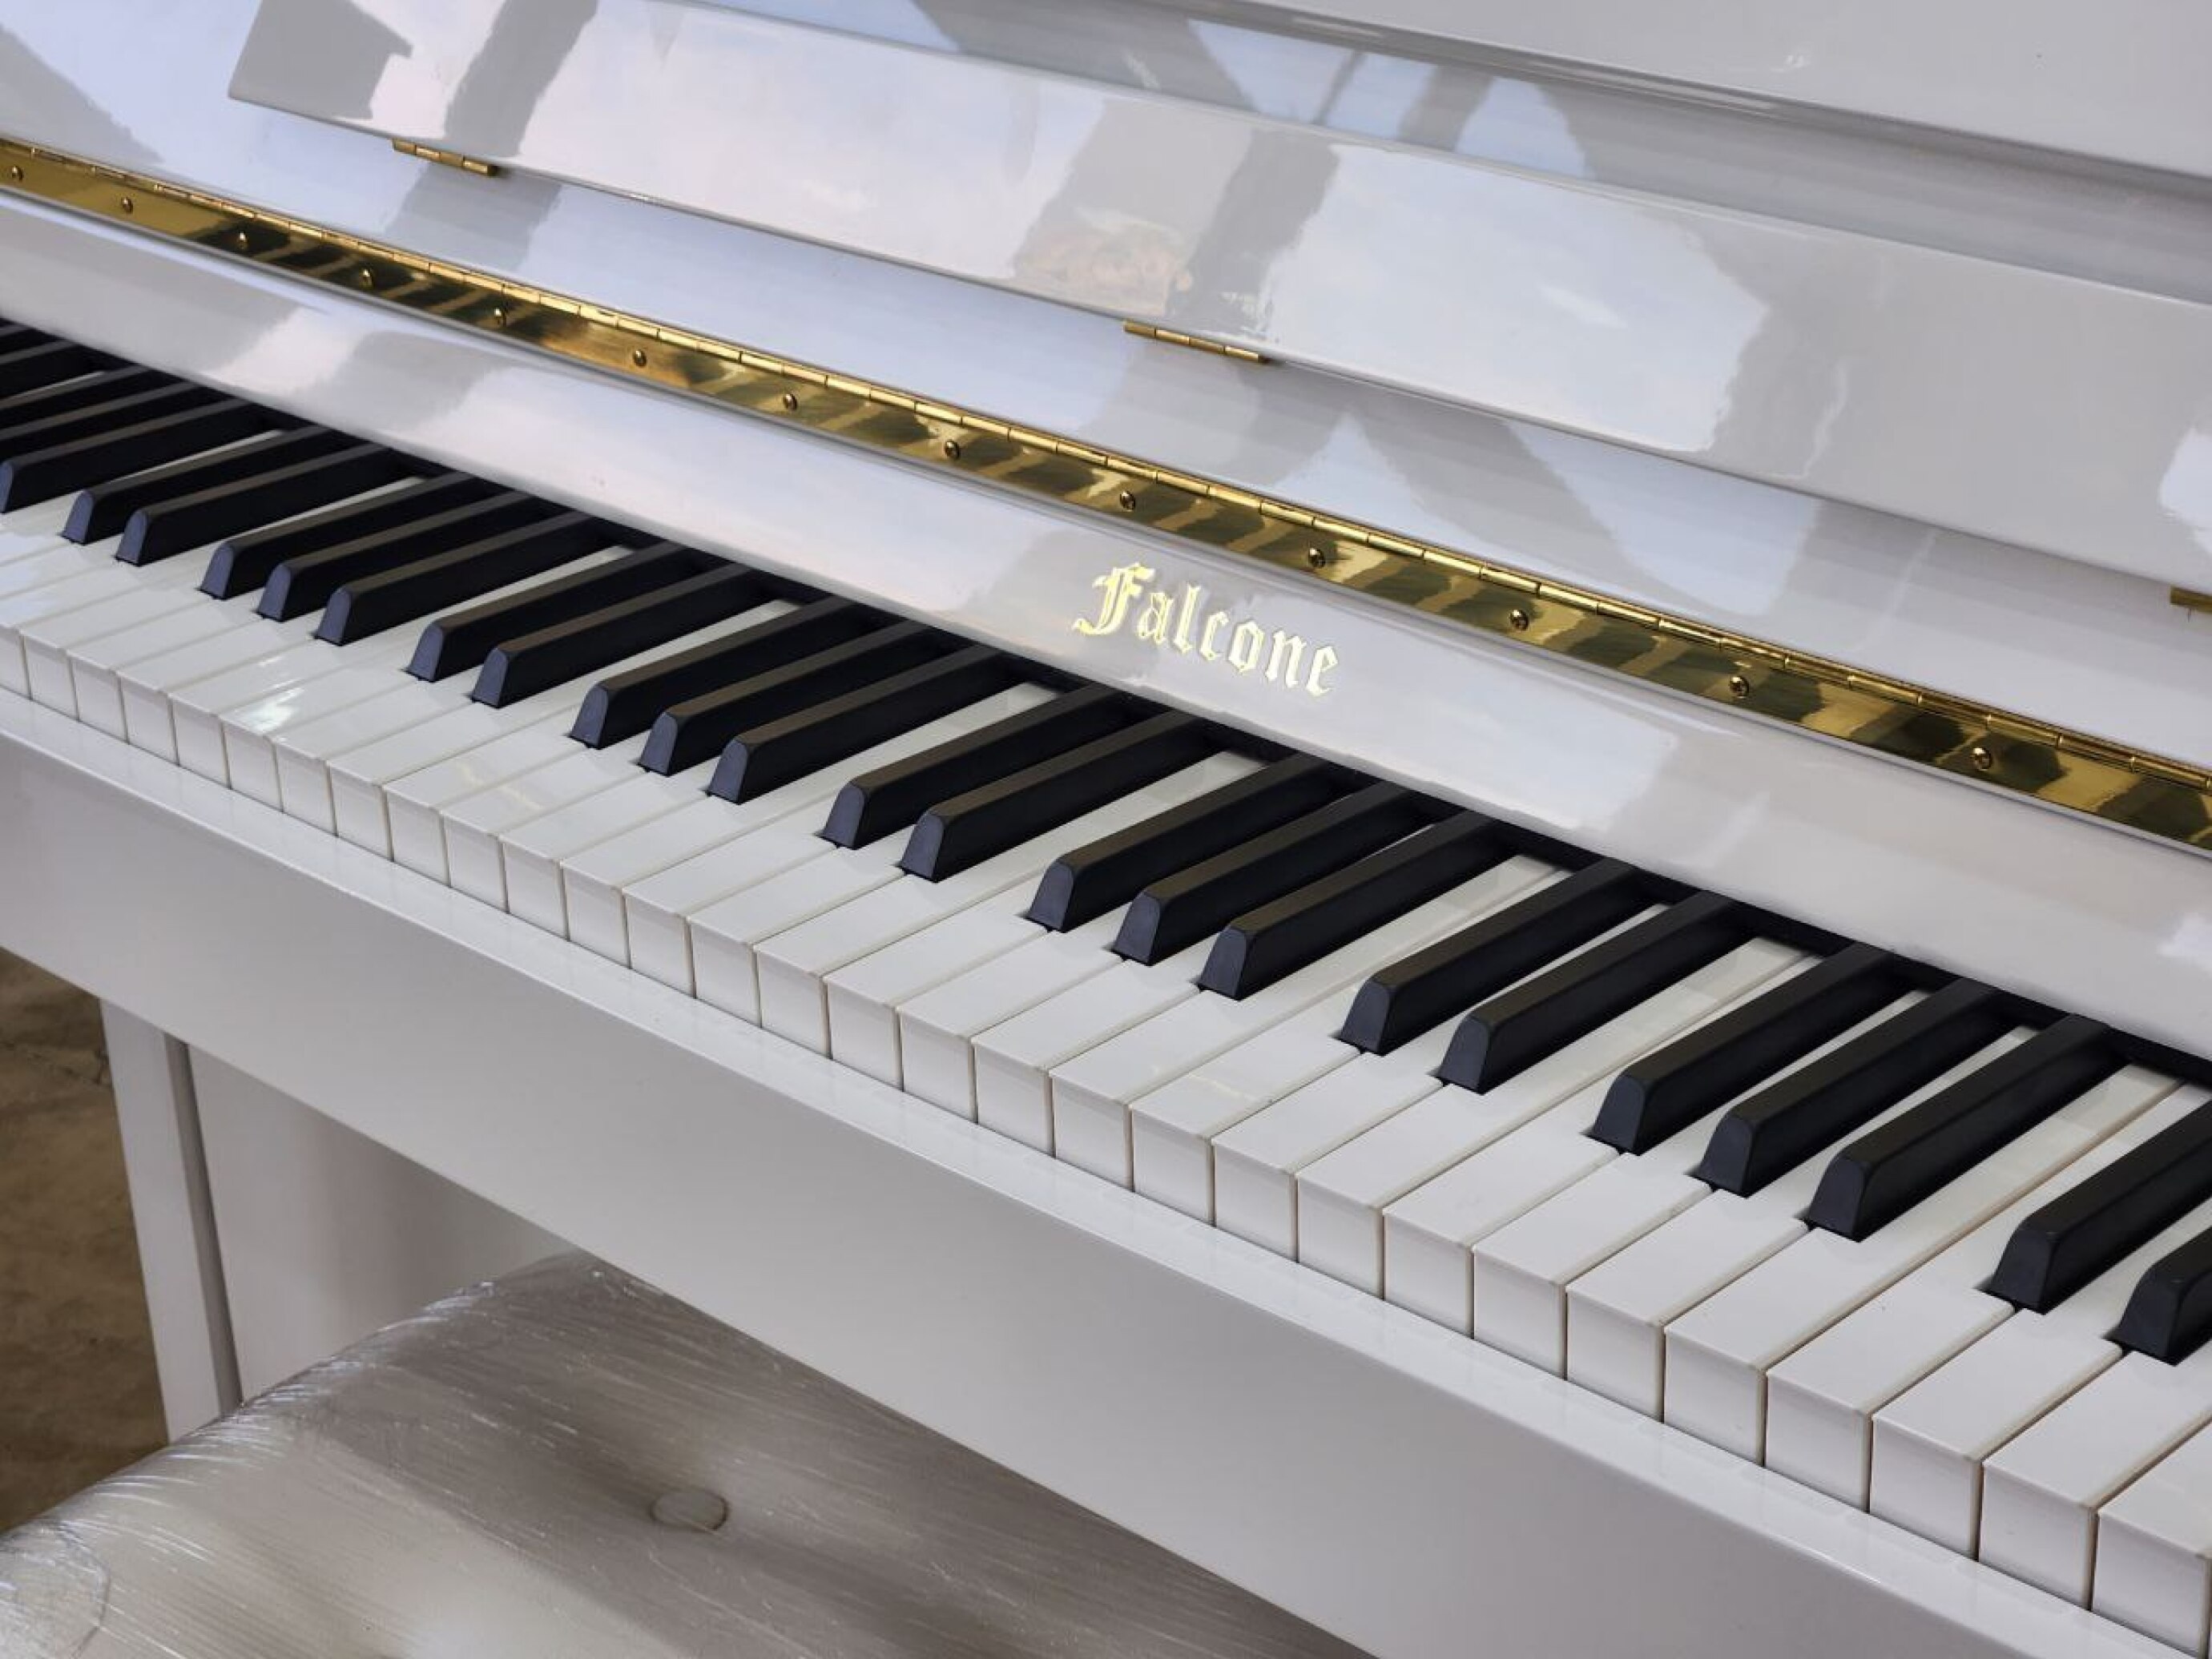  پیانو آکوستیک فالکون F-116 